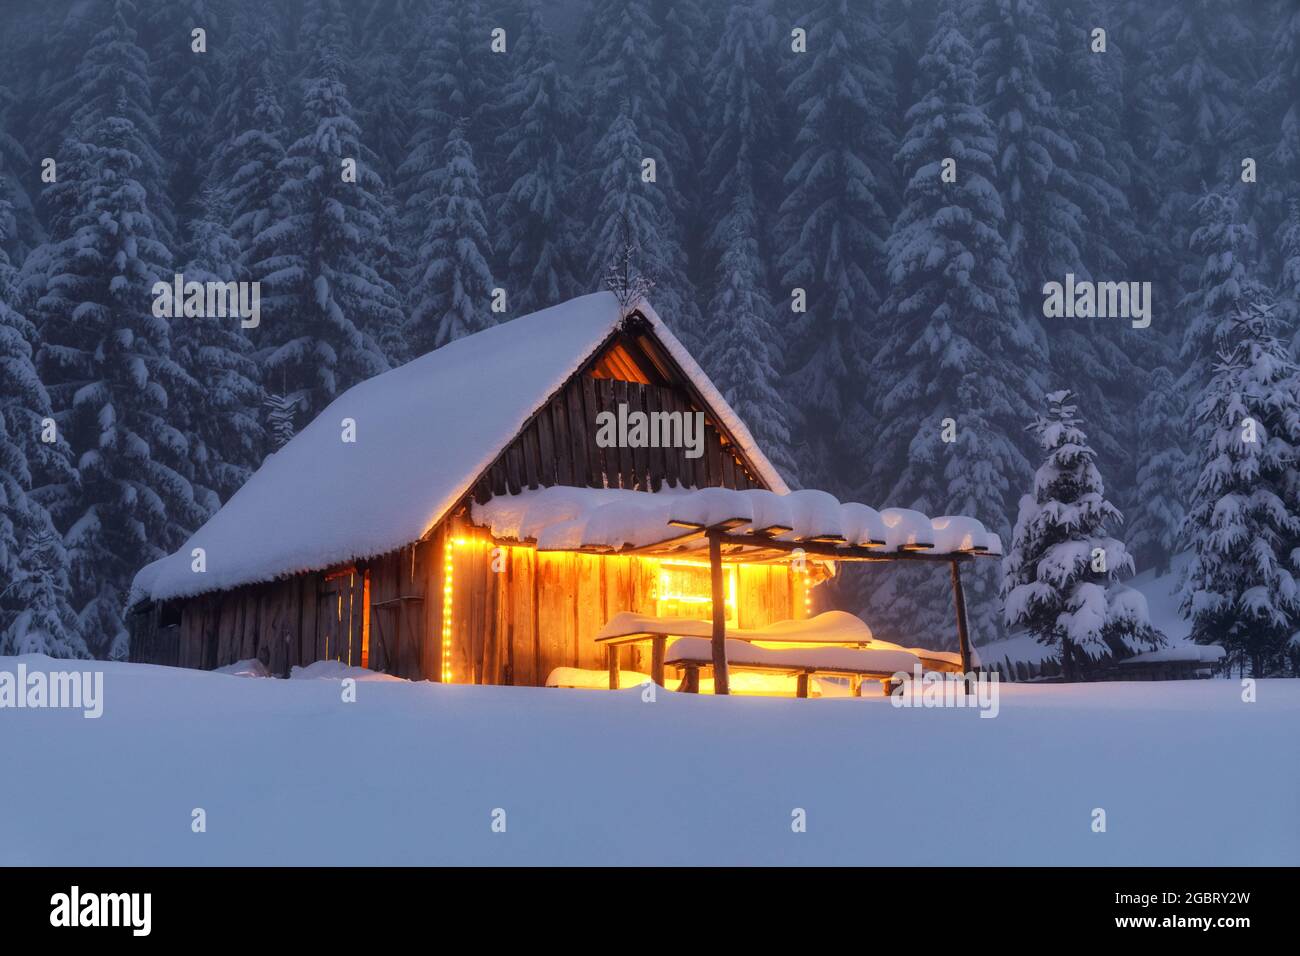 Holzhütte auf dem mit Schnee bedeckten Rasen. Abends leuchten die Lampen das Haus auf. Winterlandschaft. Mystische Nacht. Berge und Wälder. W Stockfoto